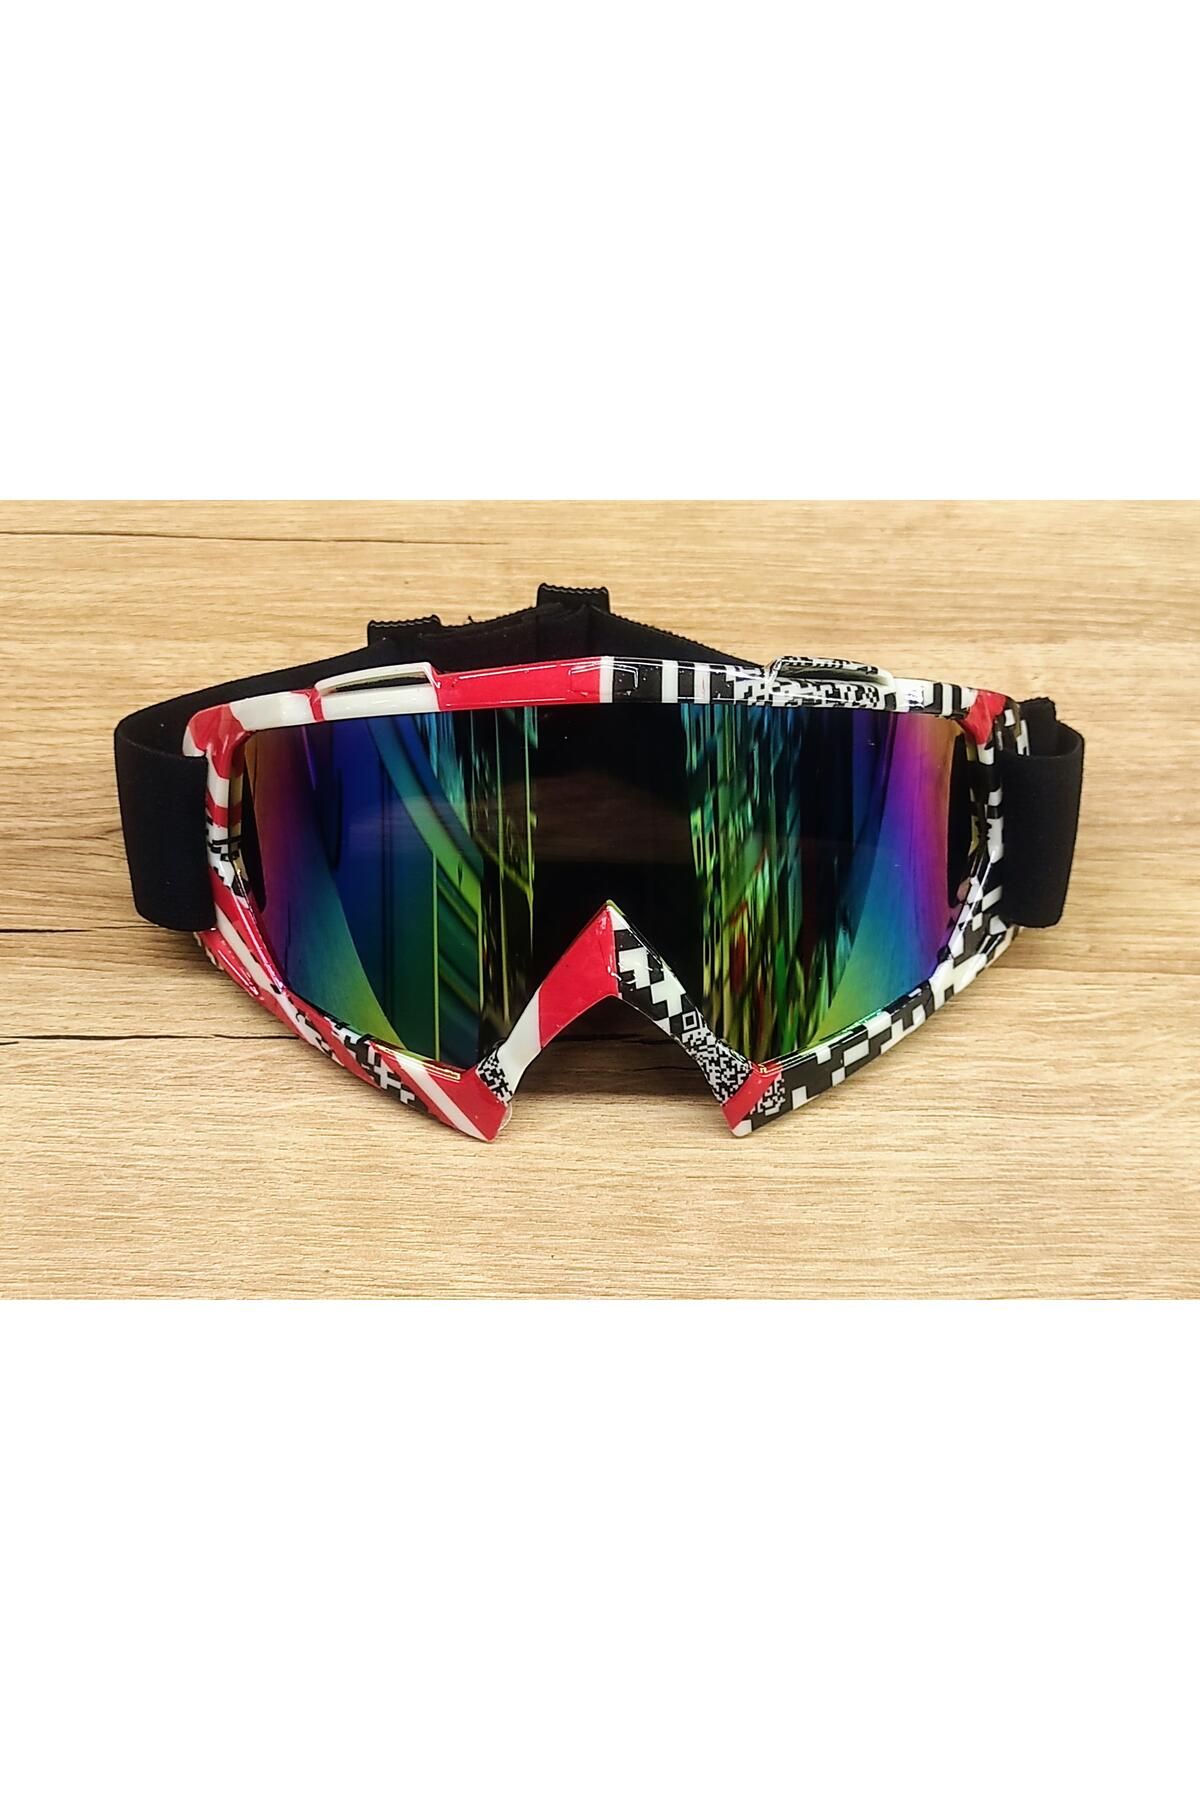 SARİSSA BİSİKLET XBYC G2860 Lüx Kross Gözlük Kask Ve Snowboard Kayak Gözlüğü Kırmızı Siyah Desenli